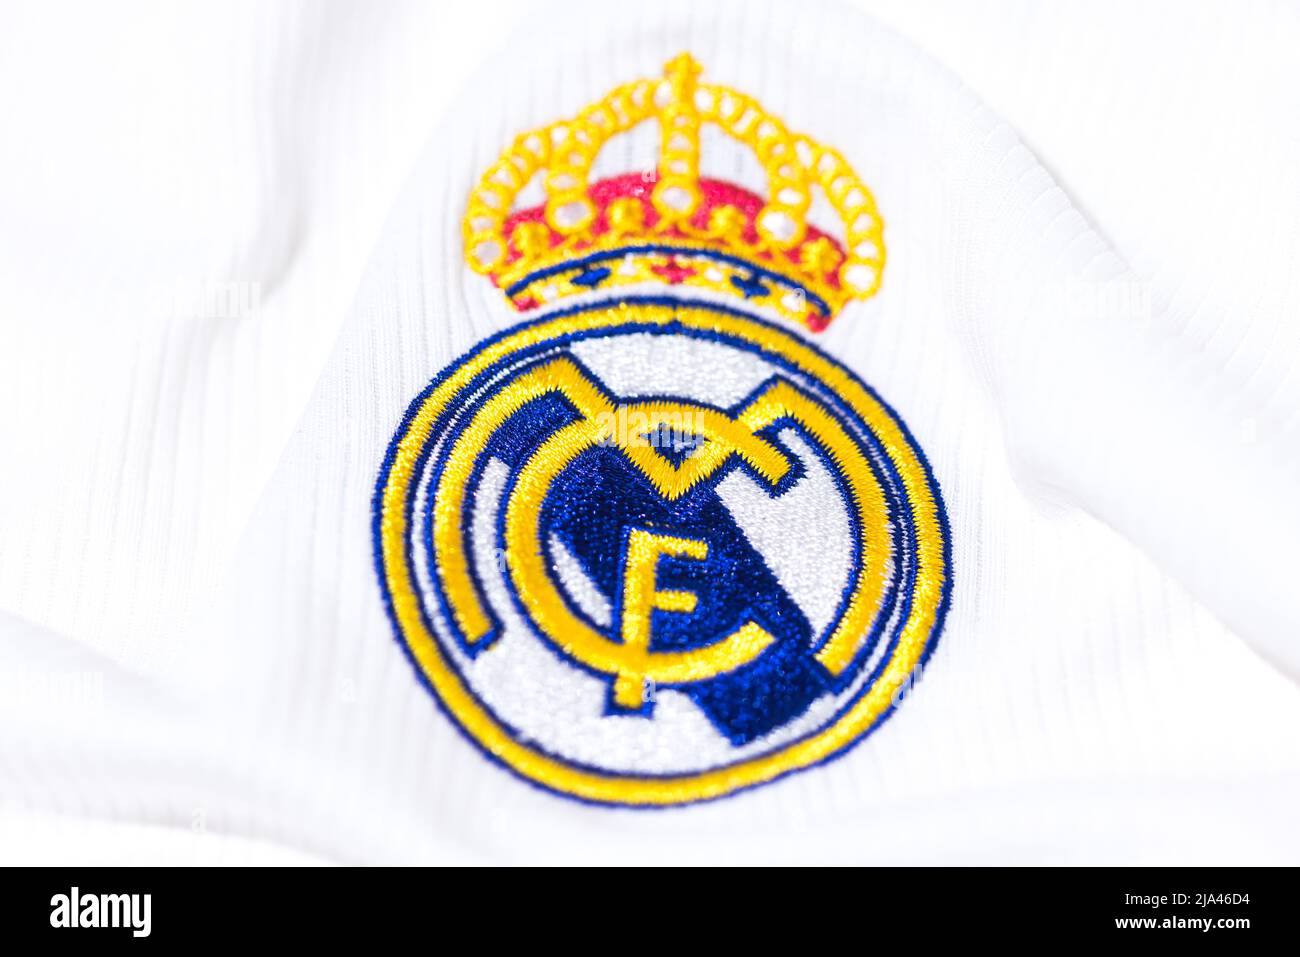 Escudo en la camiseta blanca del Real Madrid Football Club. UEFA CHAMPIONS LEAGUE FINAL CONCEPTO EL 28 DE MAYO DE 2022, CAMPEÓN, europa, LEAGUE, españa. Foto de stock